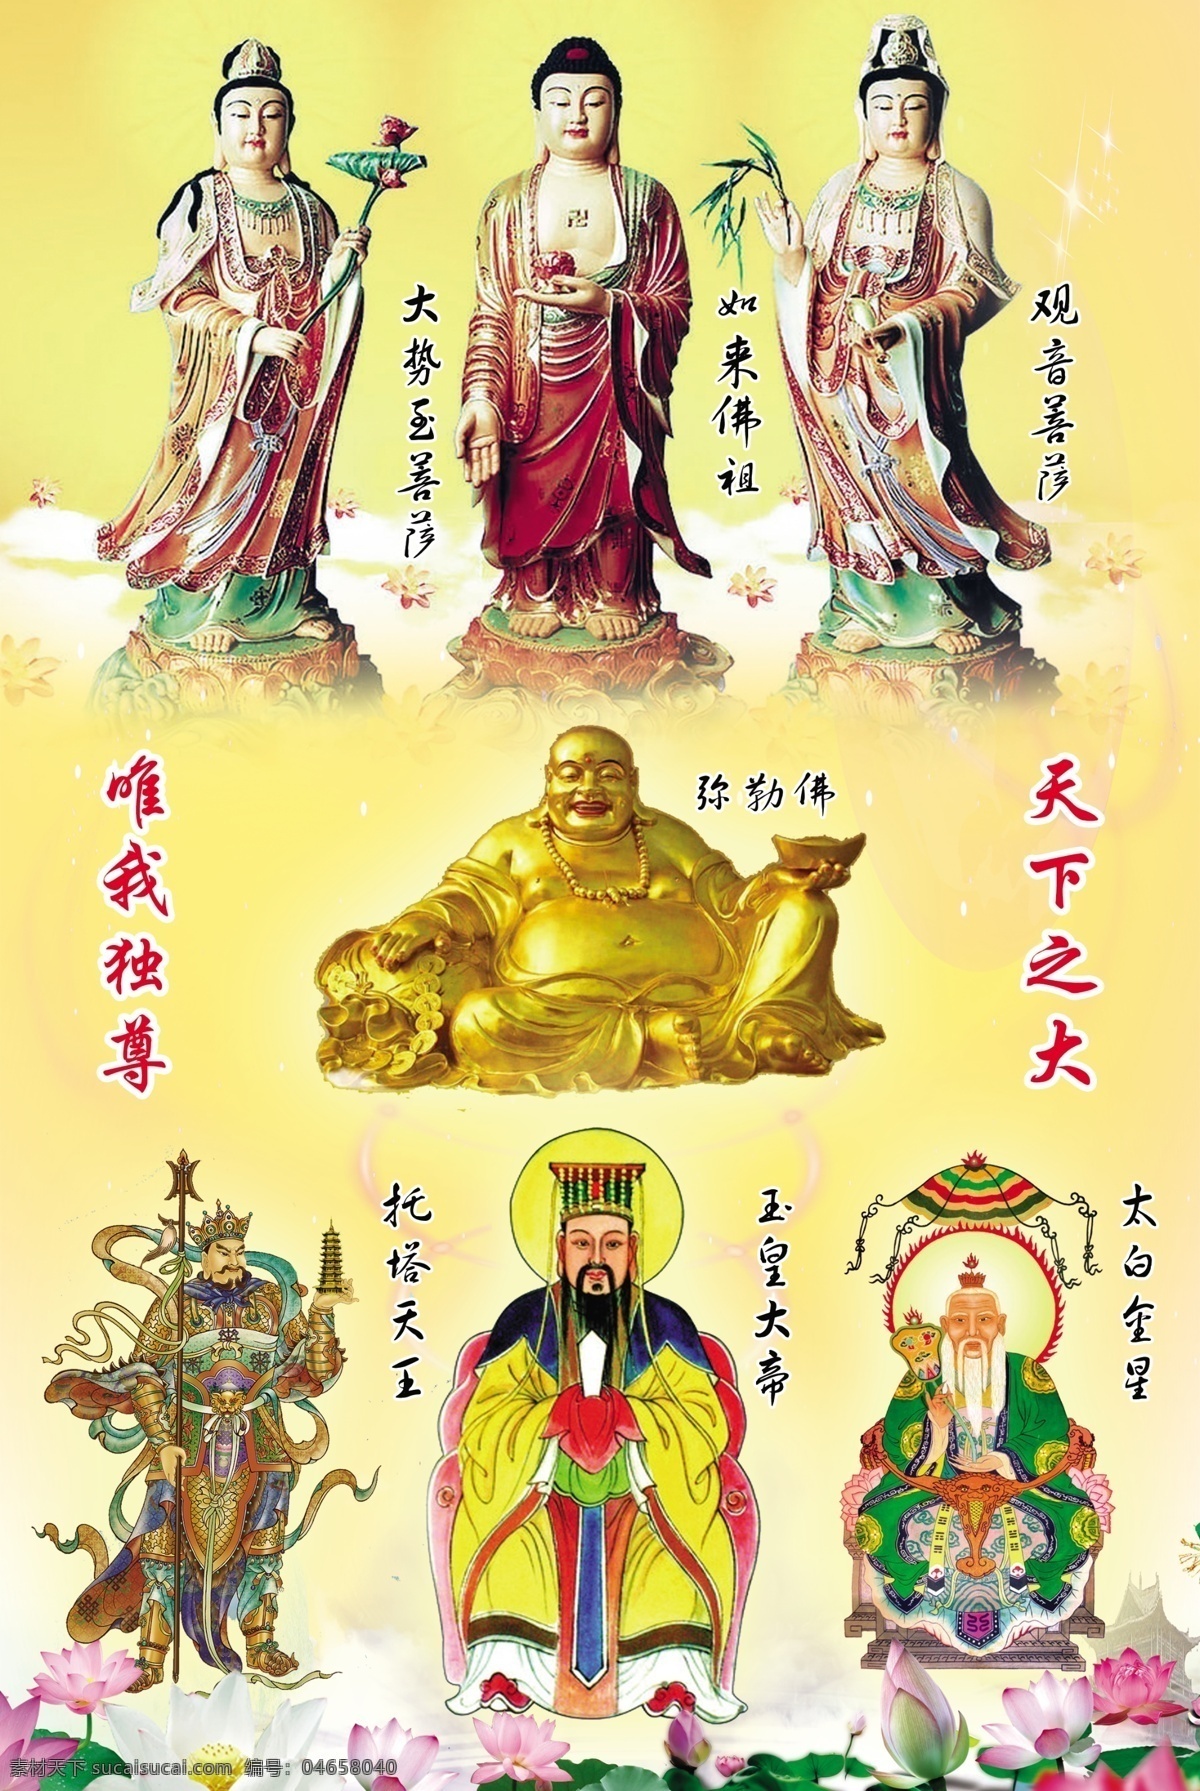 佛像 托塔李天王 玉帝 太白金星 弥勒佛 素材模版 位图设计图 其他模版 广告设计模板 源文件